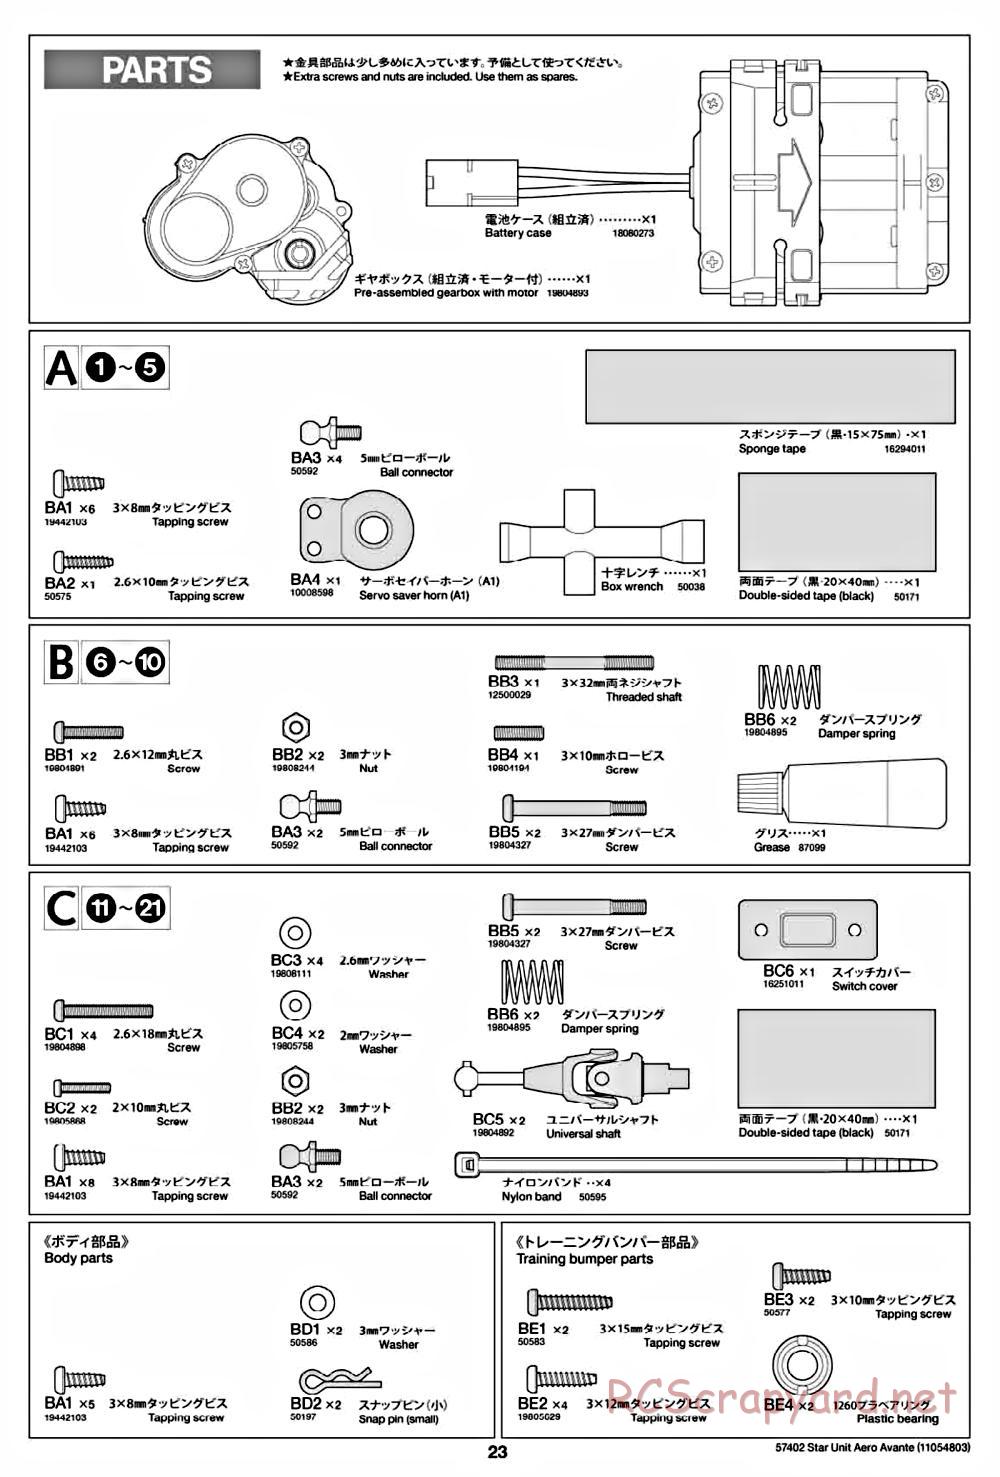 Tamiya - Aero Avante Chassis - Manual - Page 23